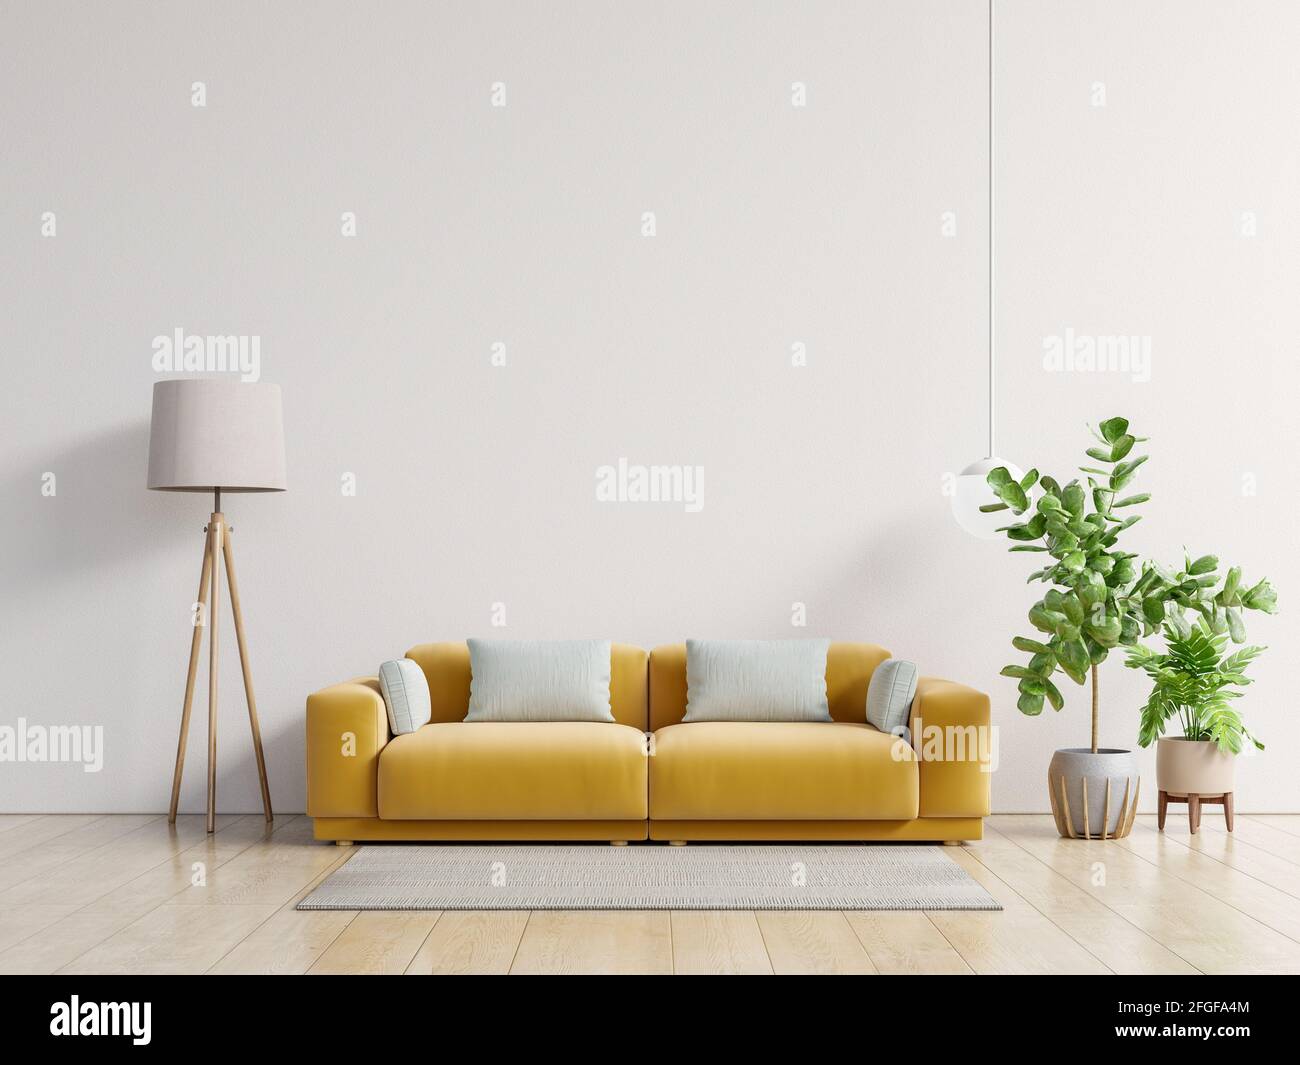 Salon vide avec canapé jaune, plantes et table sur fond blanc vide. Rendu 3D Banque D'Images